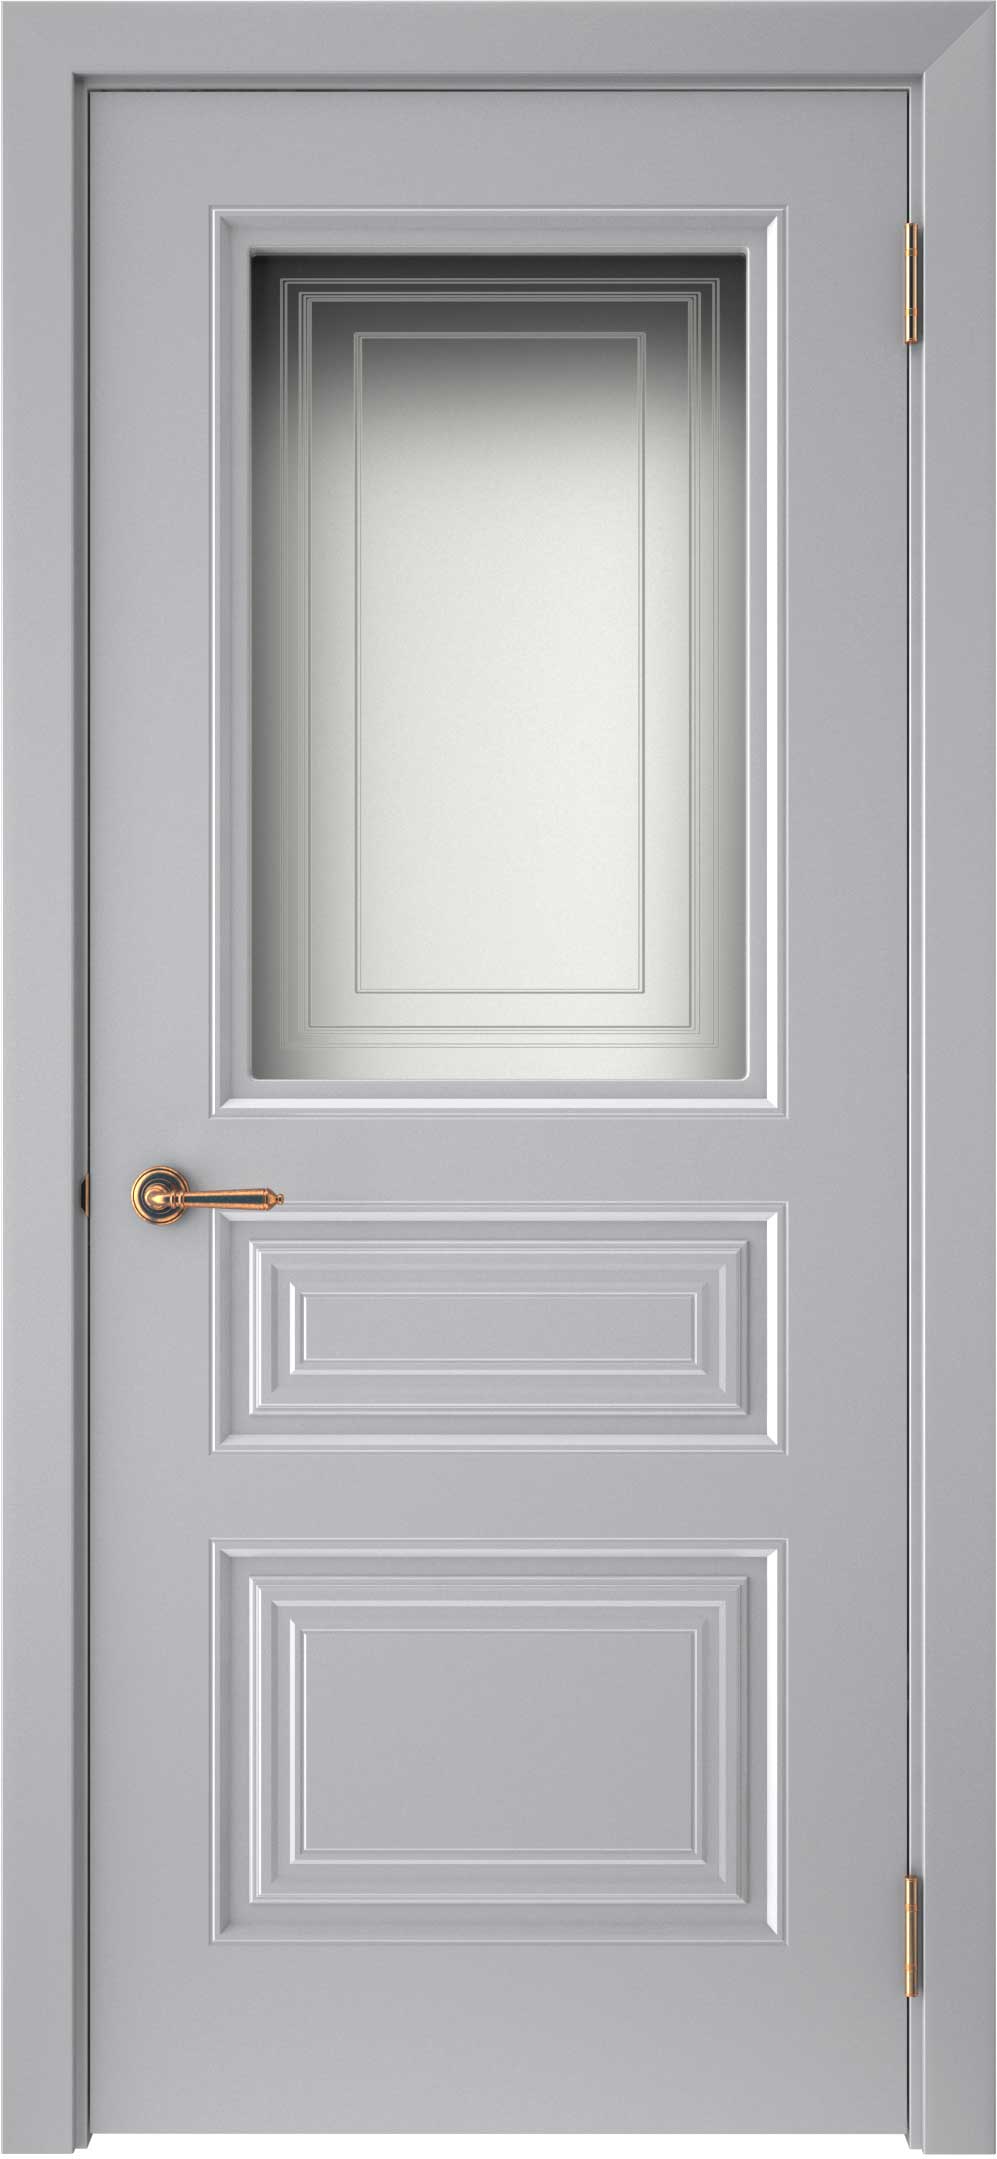 Двери крашеные (Эмаль) ТЕКОНА Смальта-44 со стеклом Серый ral 7036 размер 200 х 60 см. артикул F0000093314